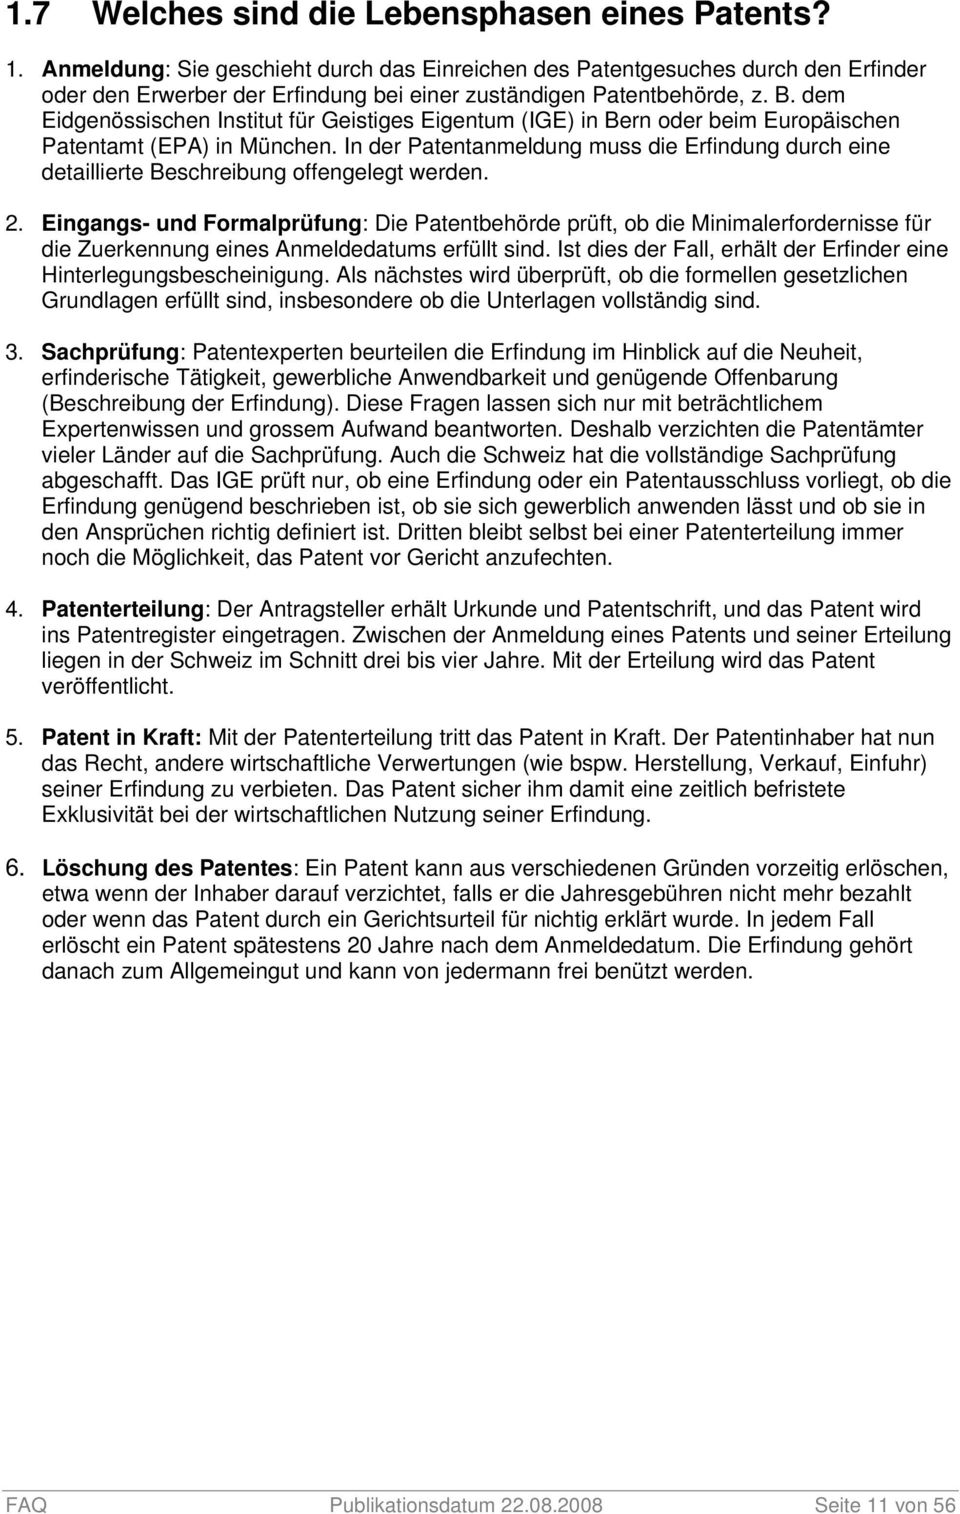 dem Eidgenössischen Institut für Geistiges Eigentum (IGE) in Bern oder beim Europäischen Patentamt (EPA) in München.